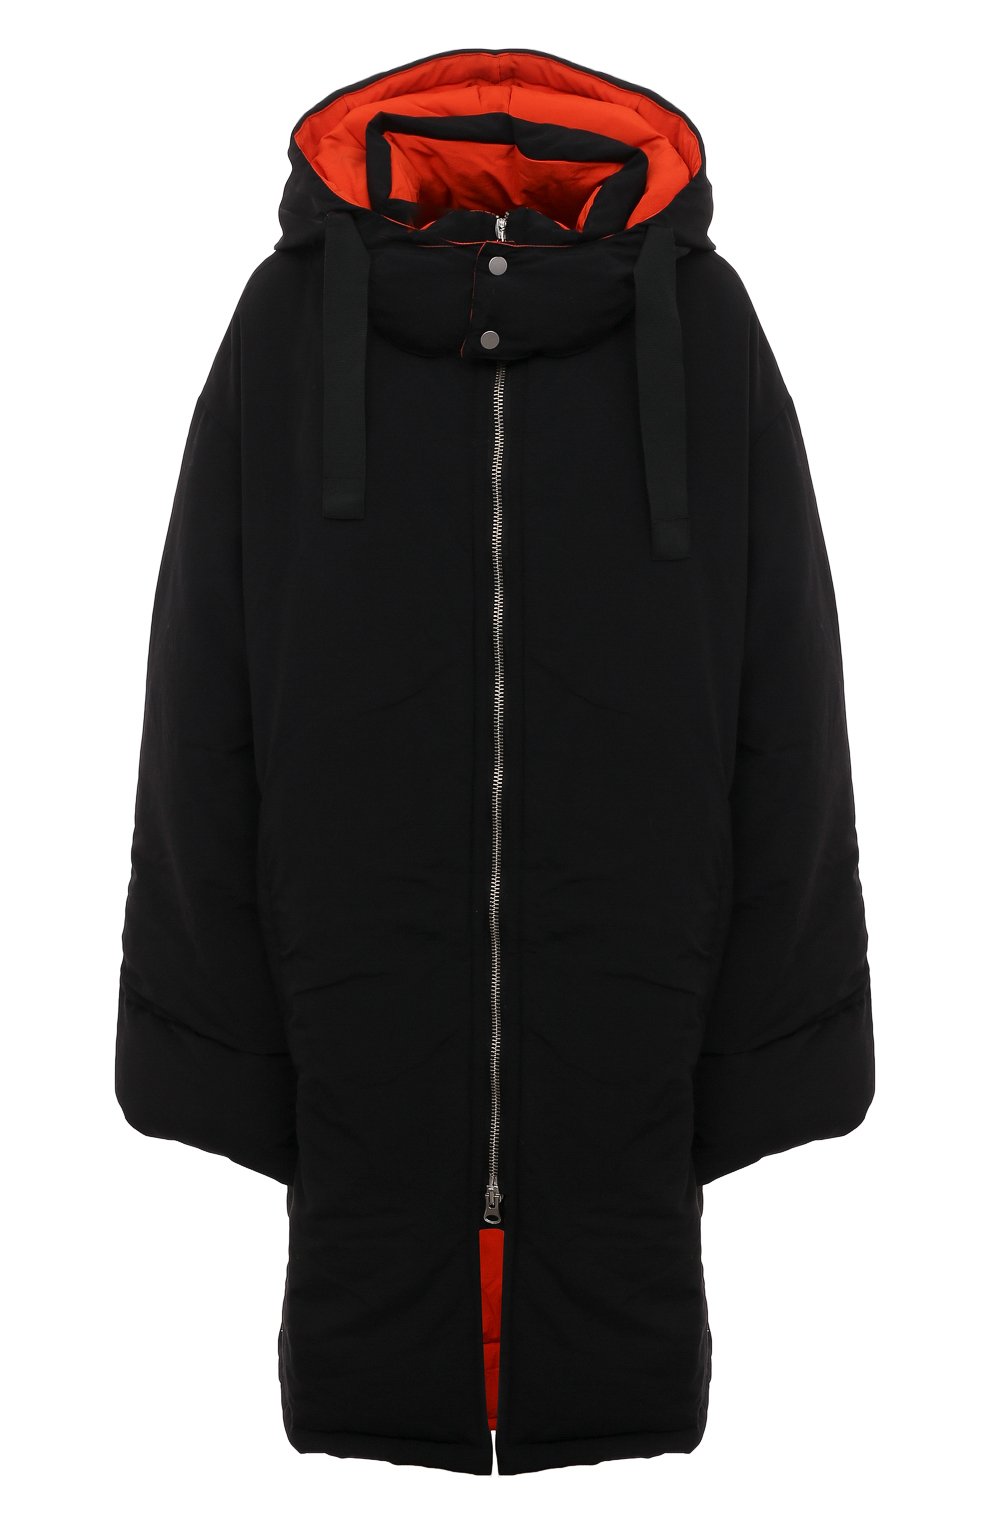 Женская куртка RED SEPTEMBER черного цвета, арт. RSFW23-53 | Фото 1 (Кросс-КТ: Куртка; Рукава: Длинные; Длина (верхняя одежда): До колена; Материал внешний: Синтетический материал; Стили: Спорт-шик)